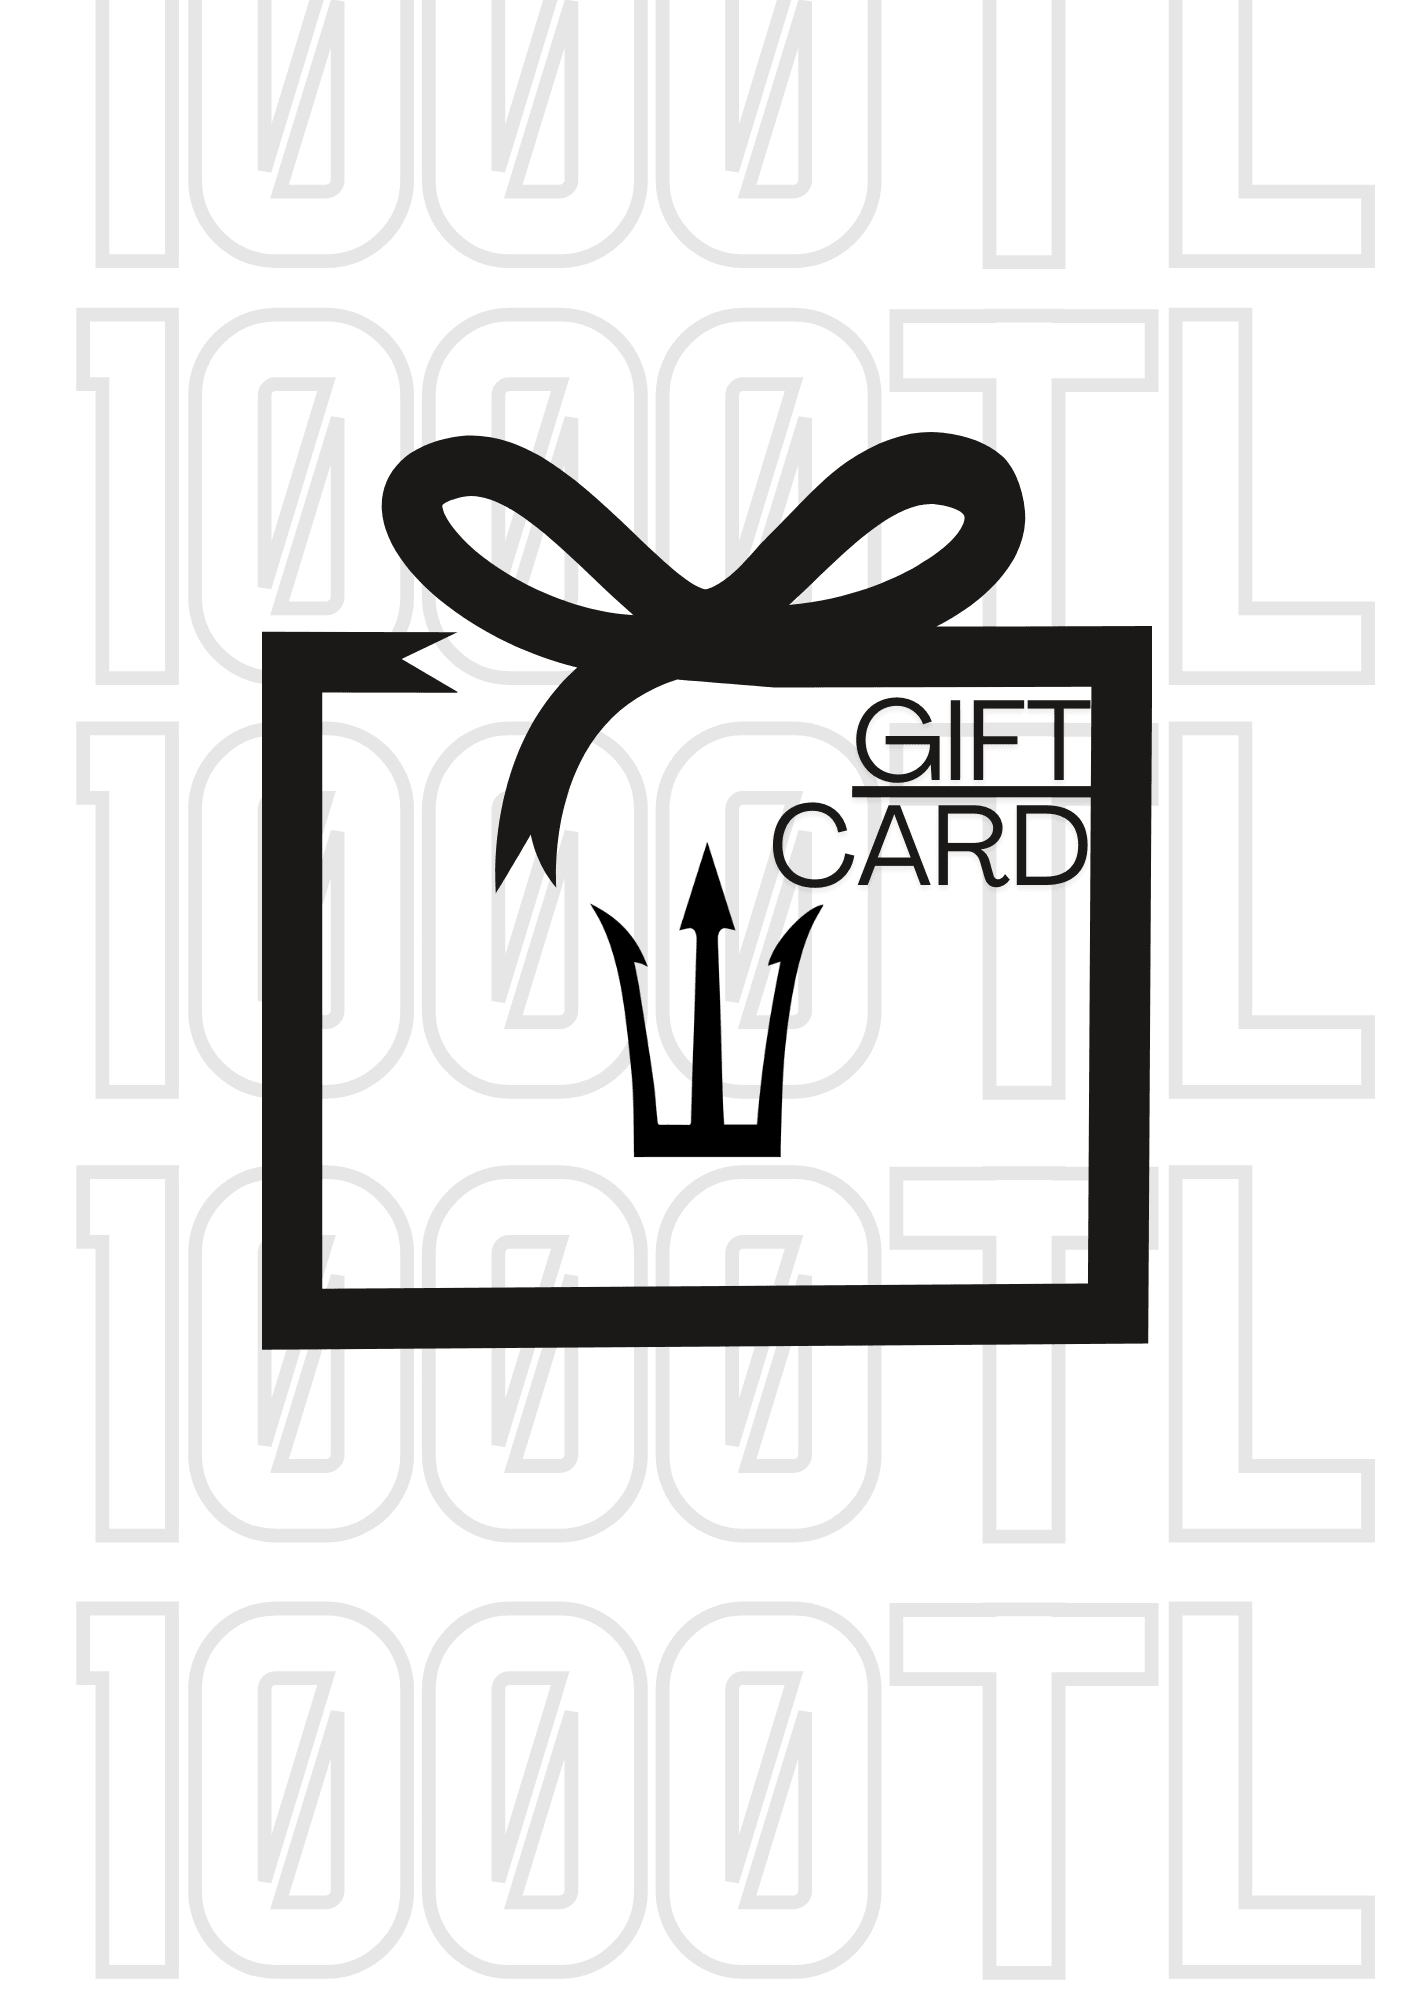 Digital Gift Card (Dijital Hediye Alışveriş Kartı) - 1000 TL